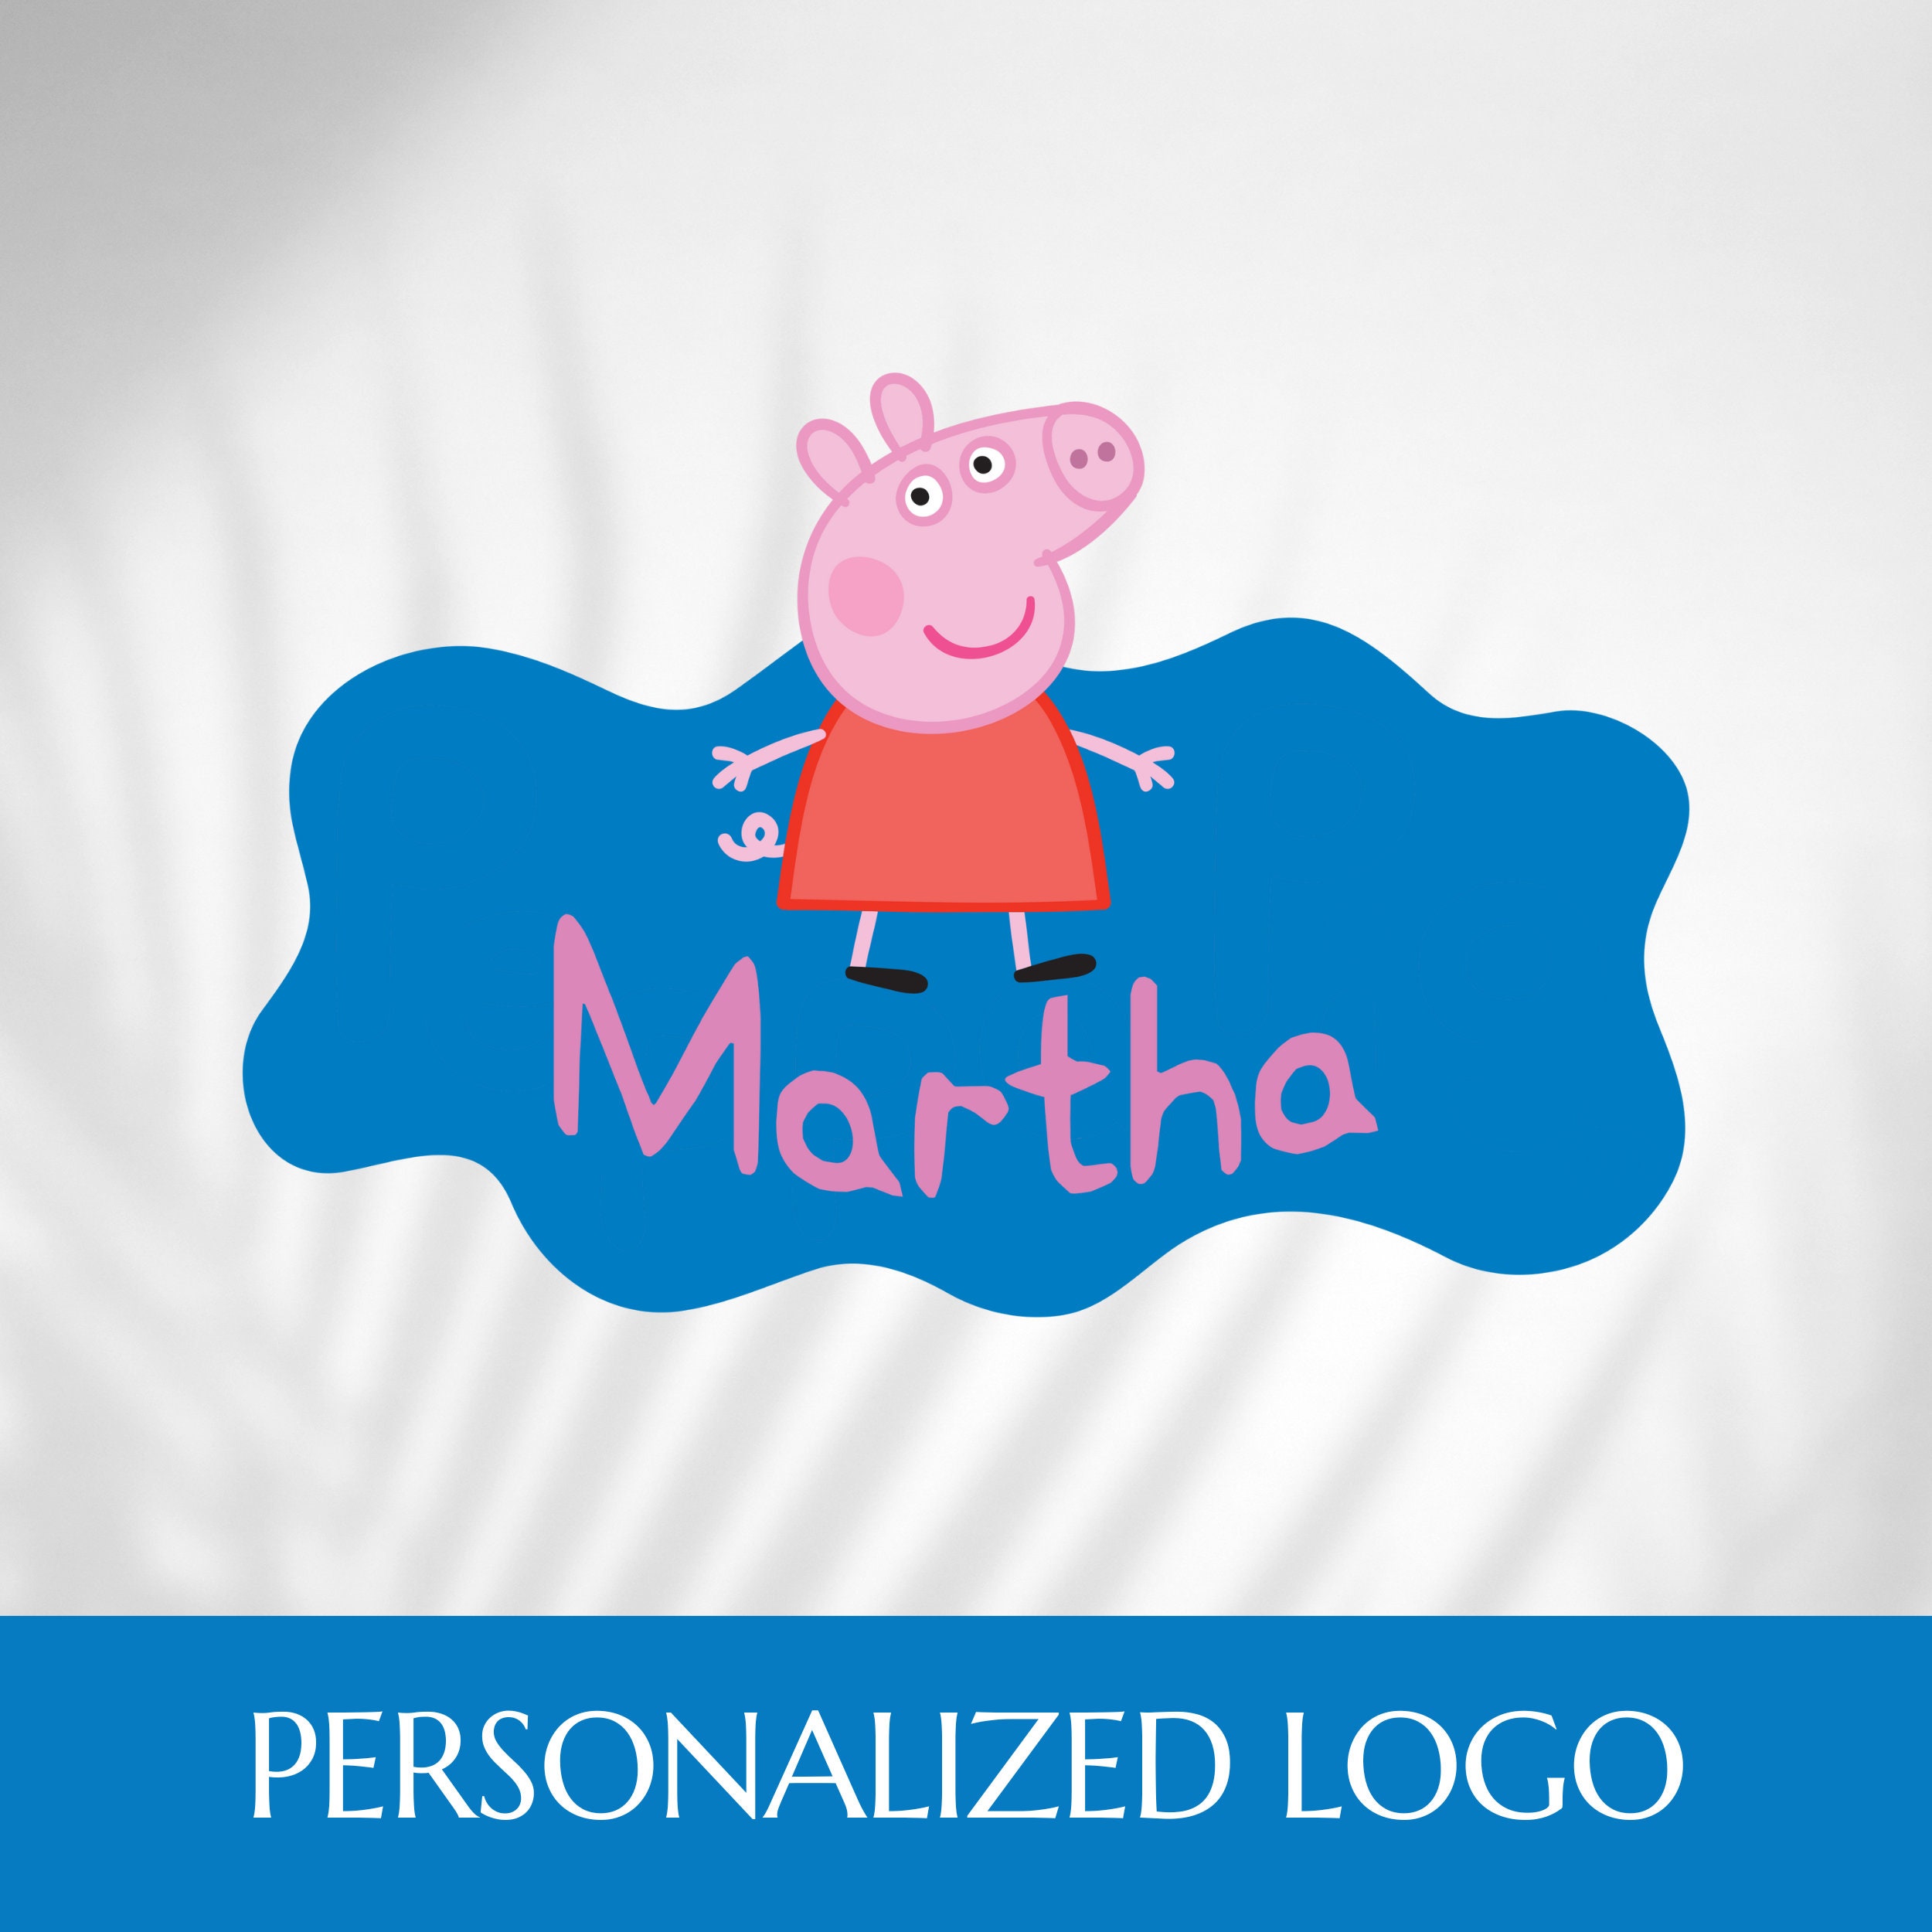 Pack de pegatinas personalizadas Peppa Pig - Tú personalizas